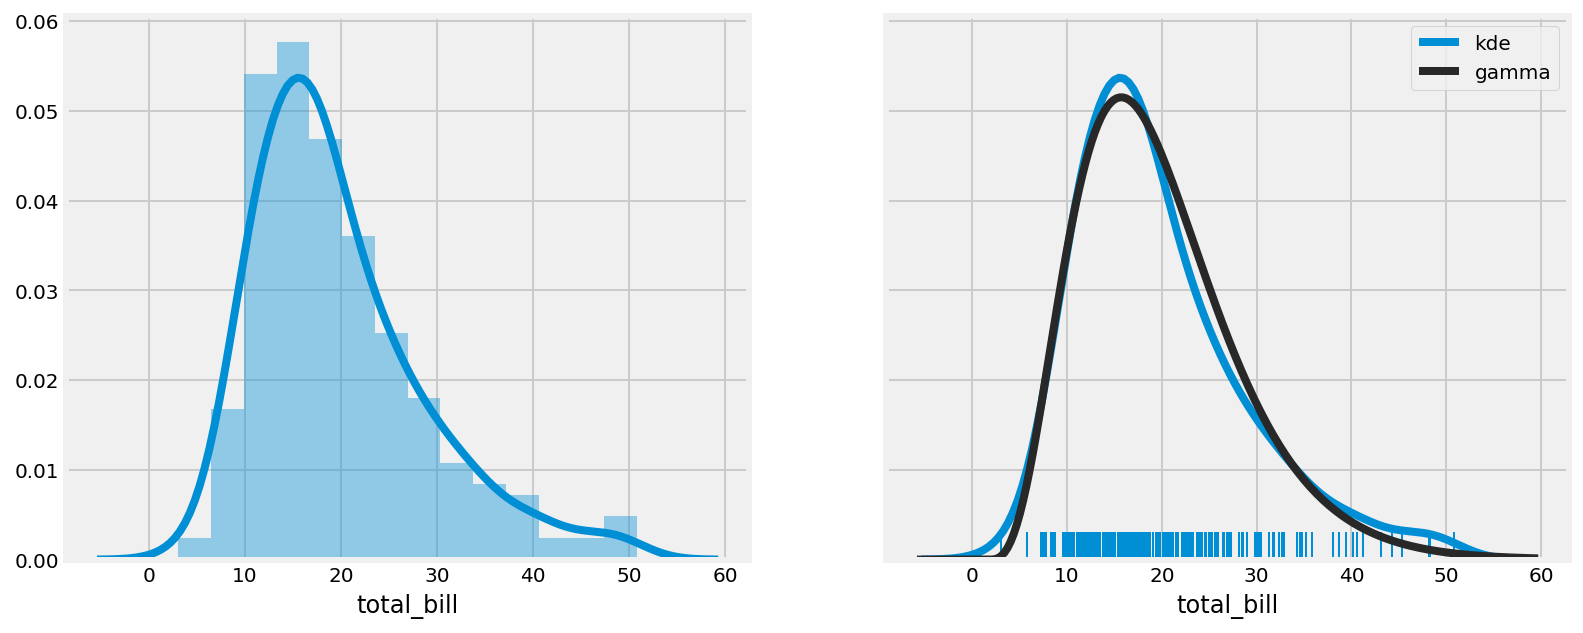 Kernel density estimation